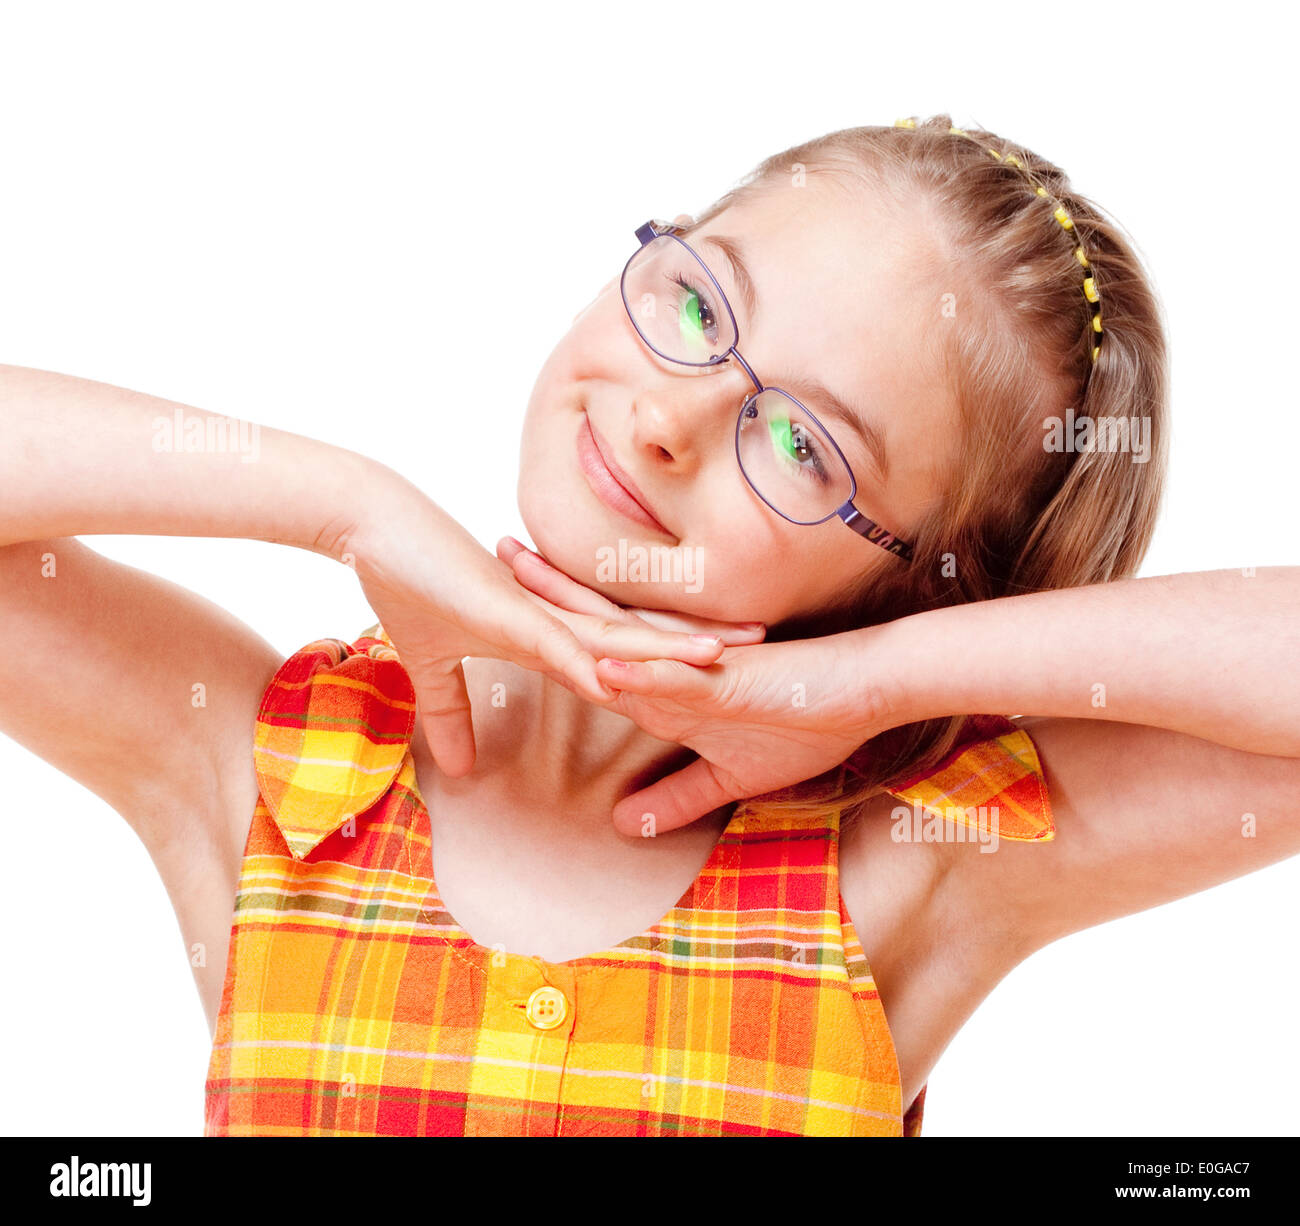 Ritratto di una piccola ragazza con i capelli biondi e occhiali - Isolato su bianco Foto Stock